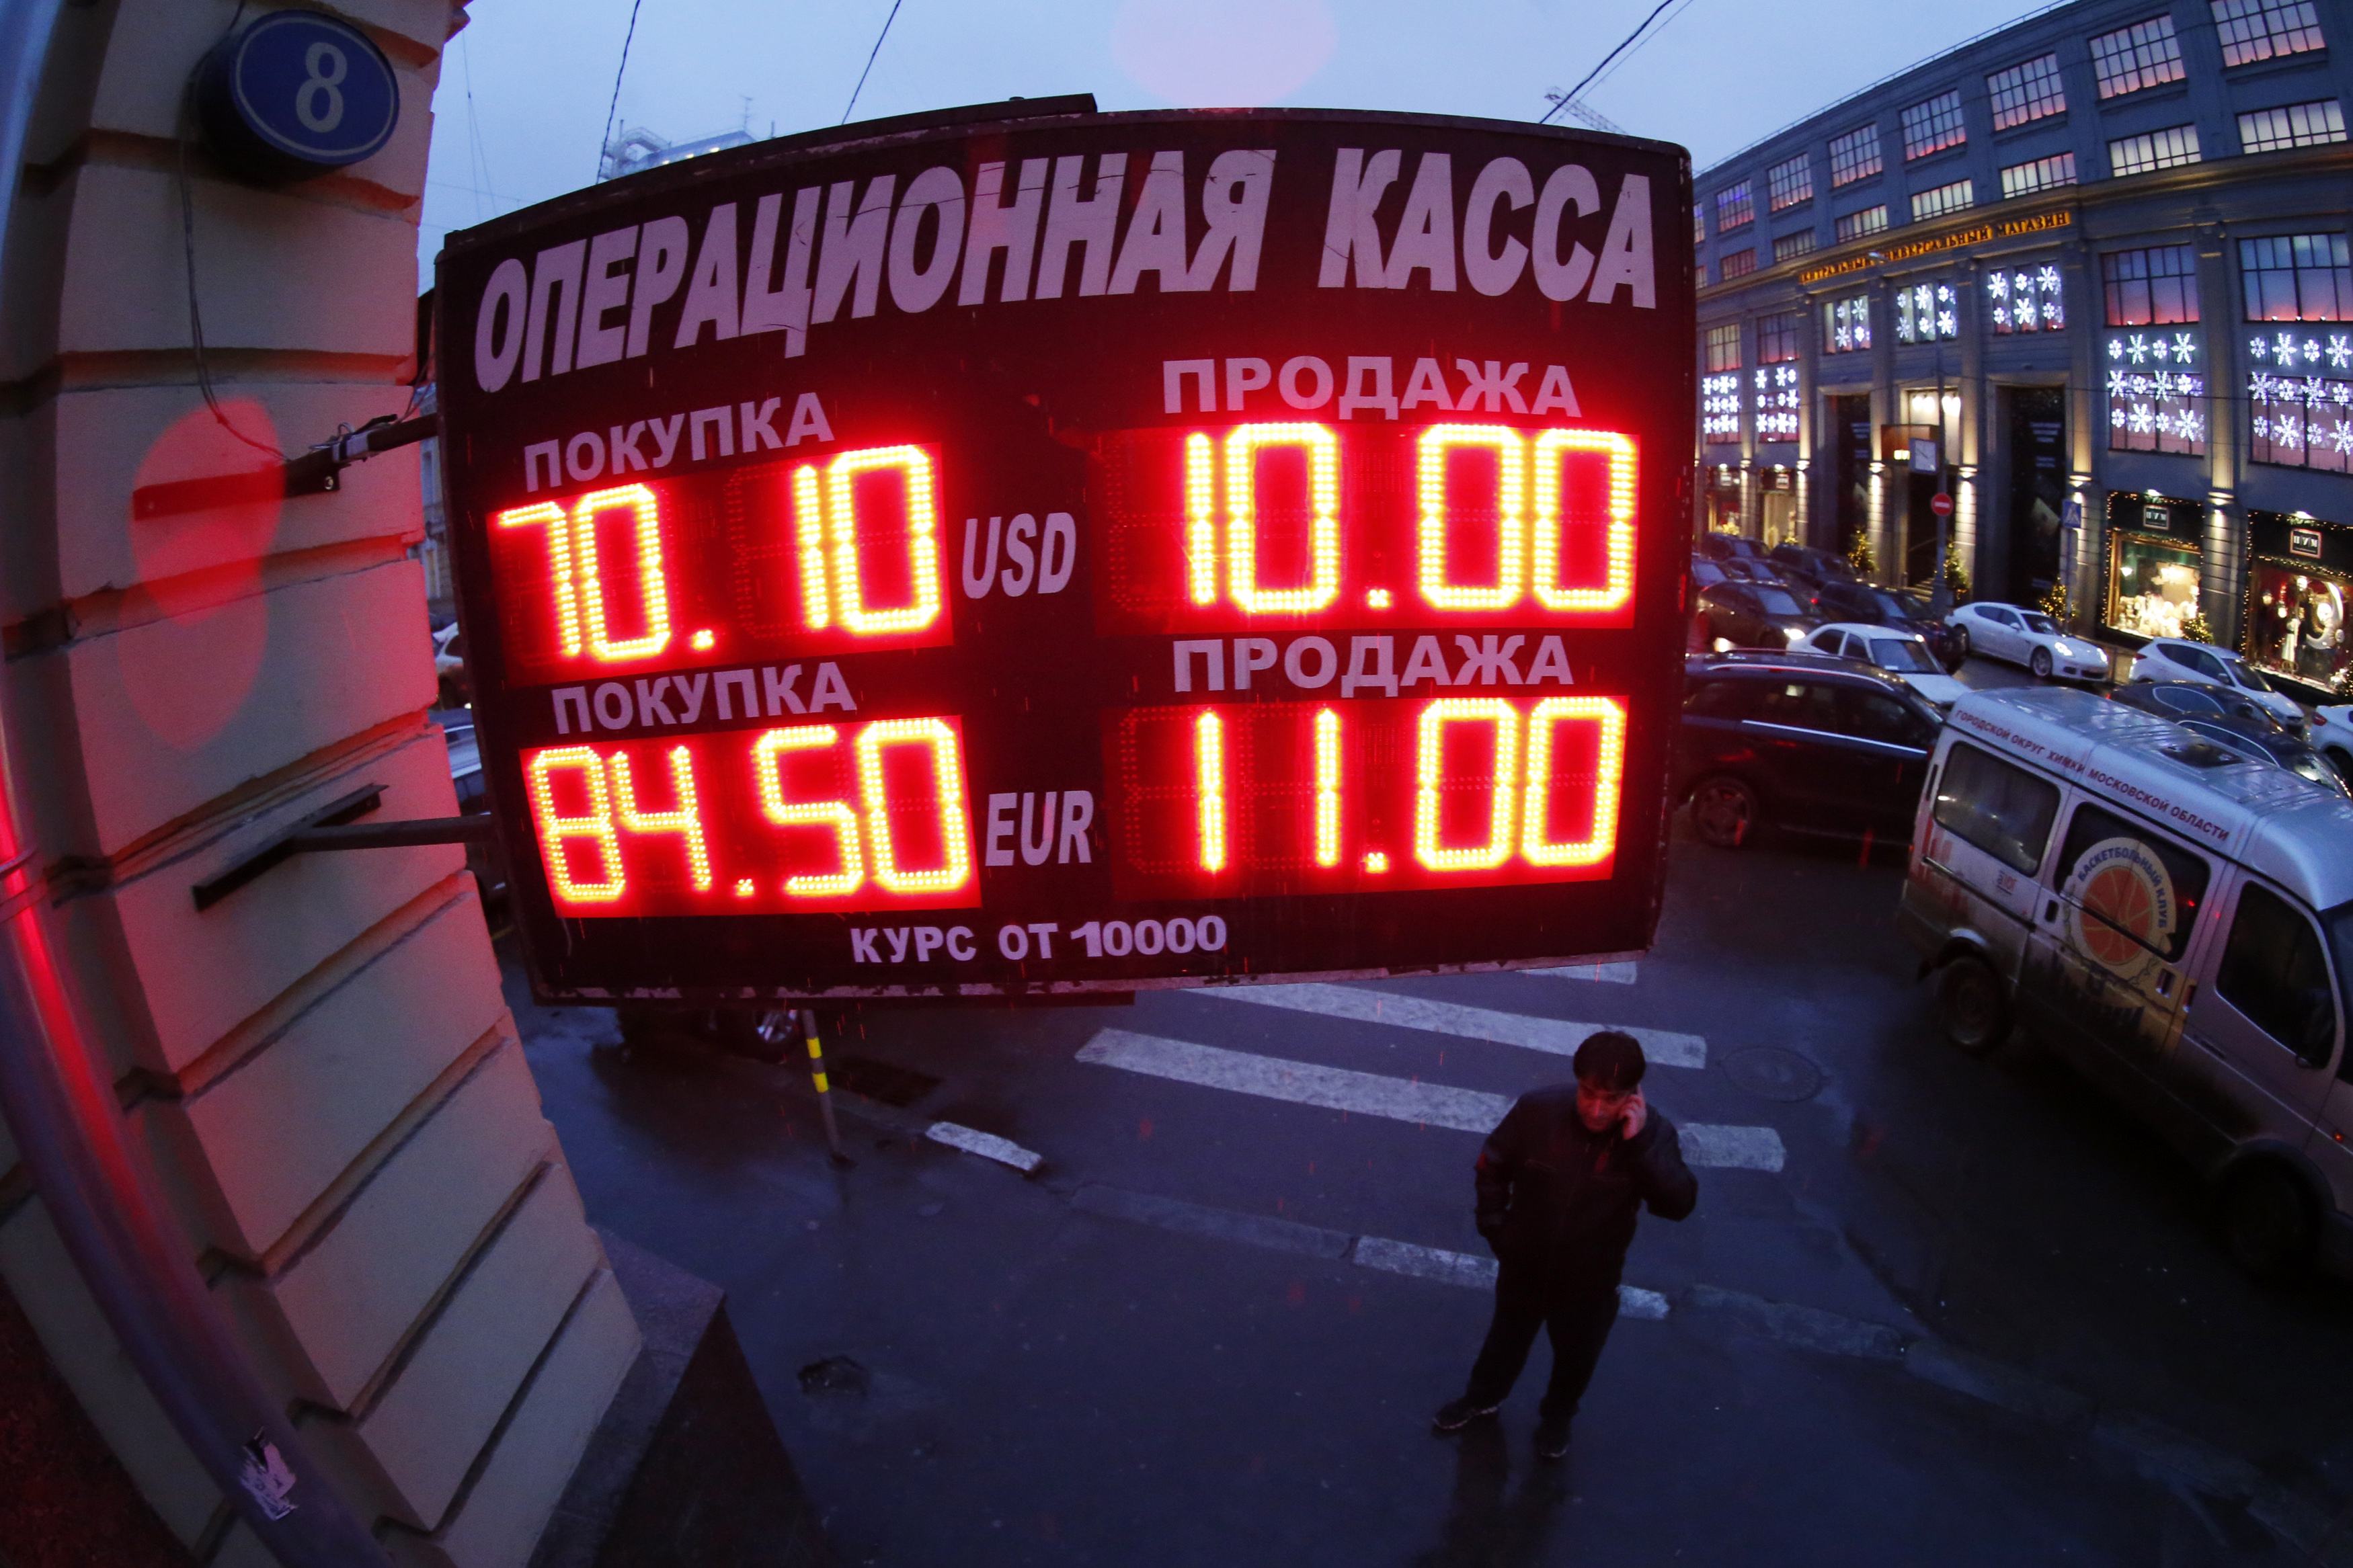 La situación es crítica, según el Banco Central de Rusia